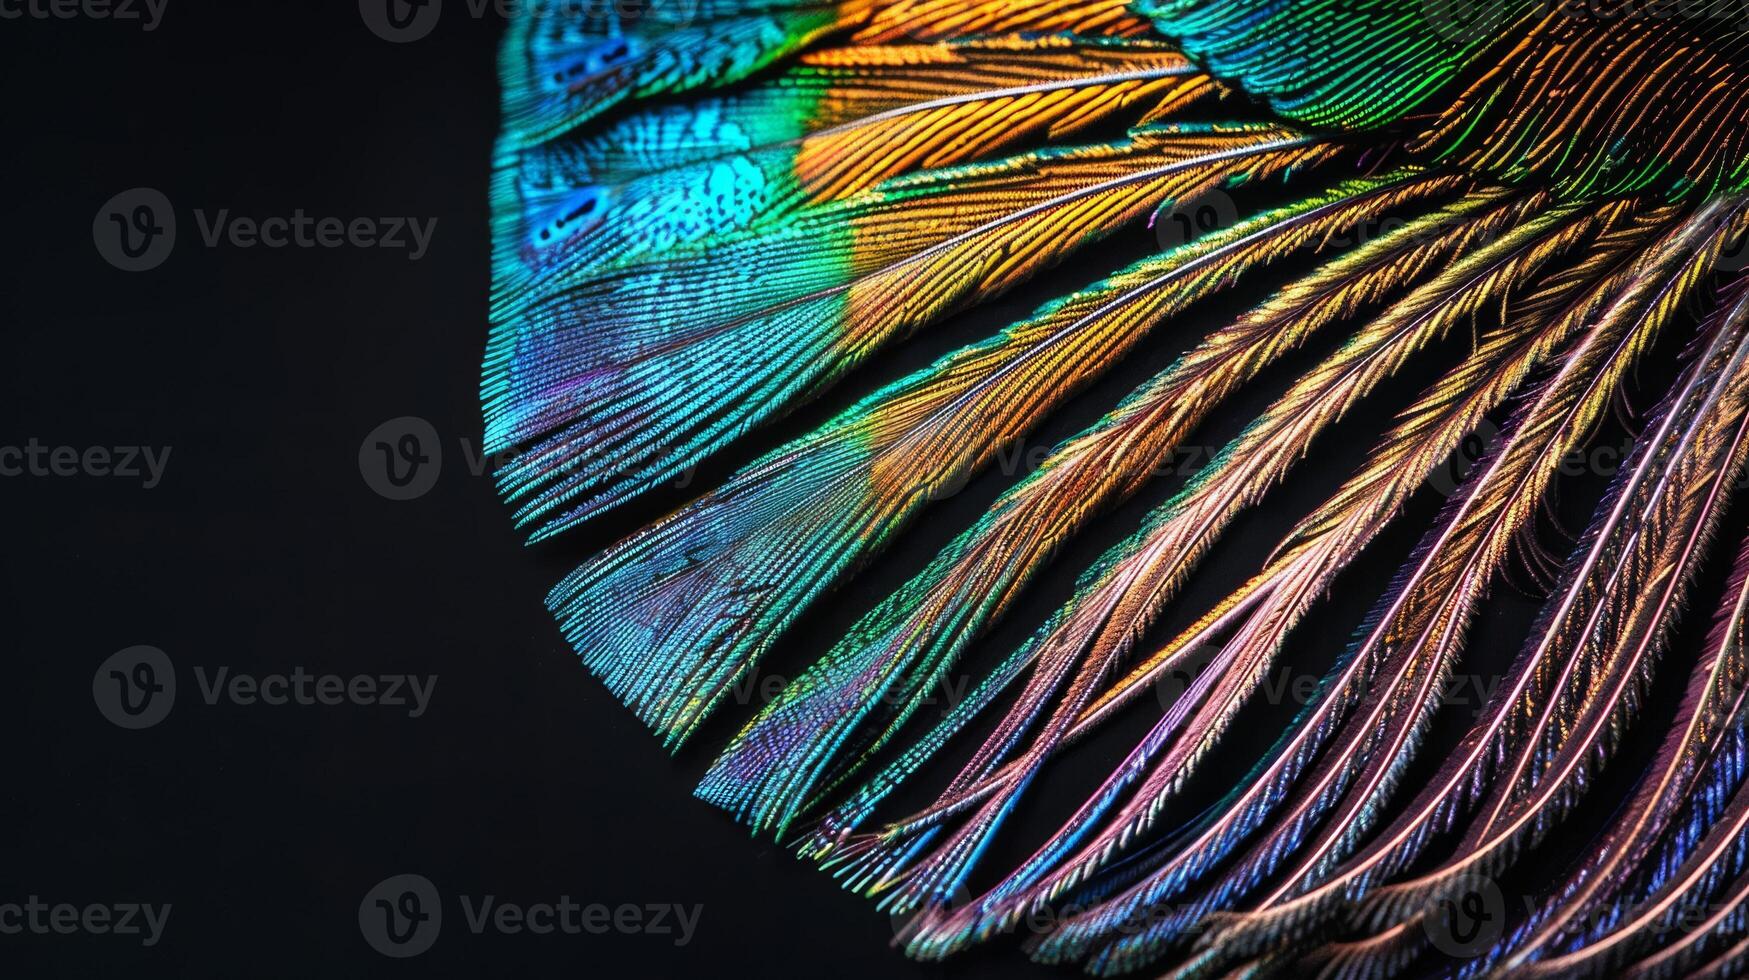 proche en haut de une coloré paon plume, détaillé texture, isolé sur noir Contexte photo